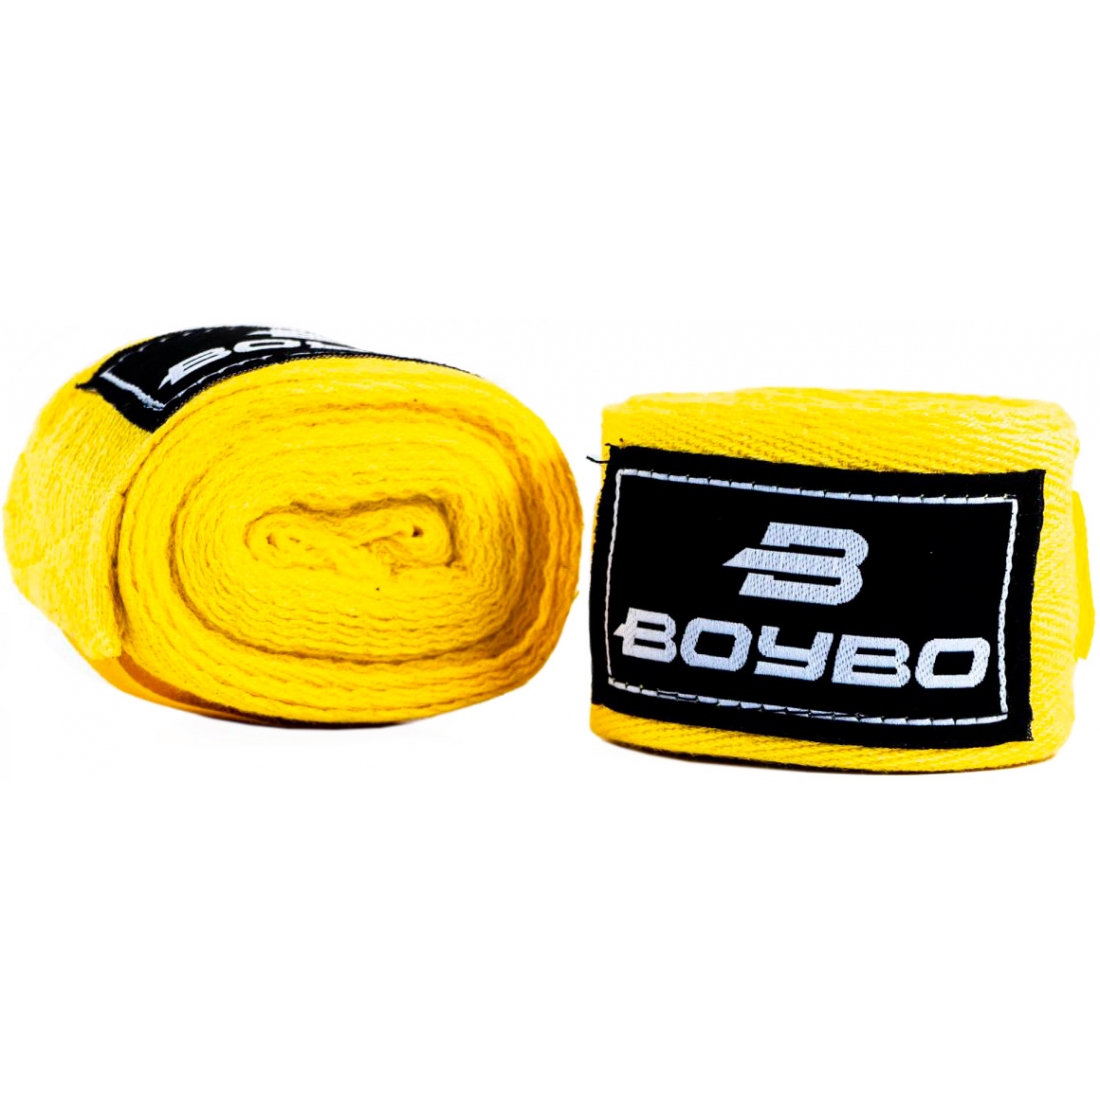 Бинты боксерские BoyBo, длина 3,5 метра, материал хлопок, цвет желтый